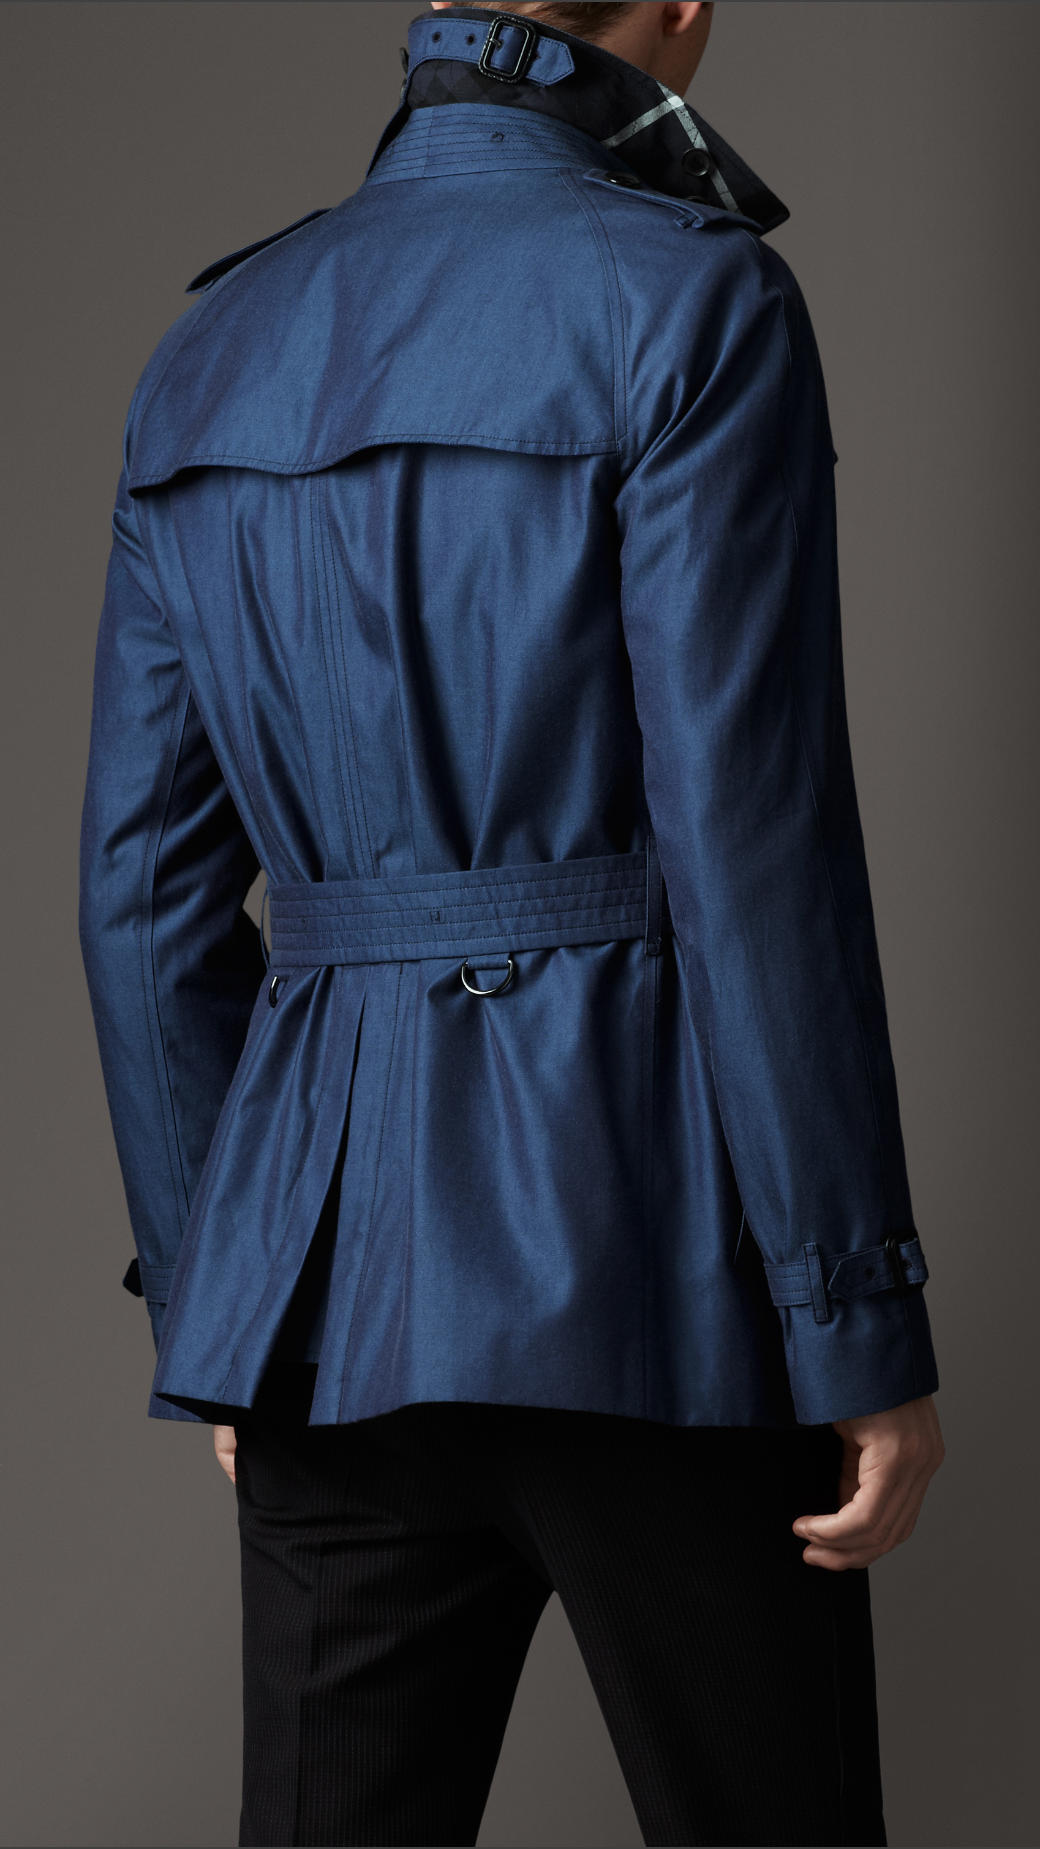 Burberry Short Cotton Gabardine Trench Coat in Blue for Men - Lyst